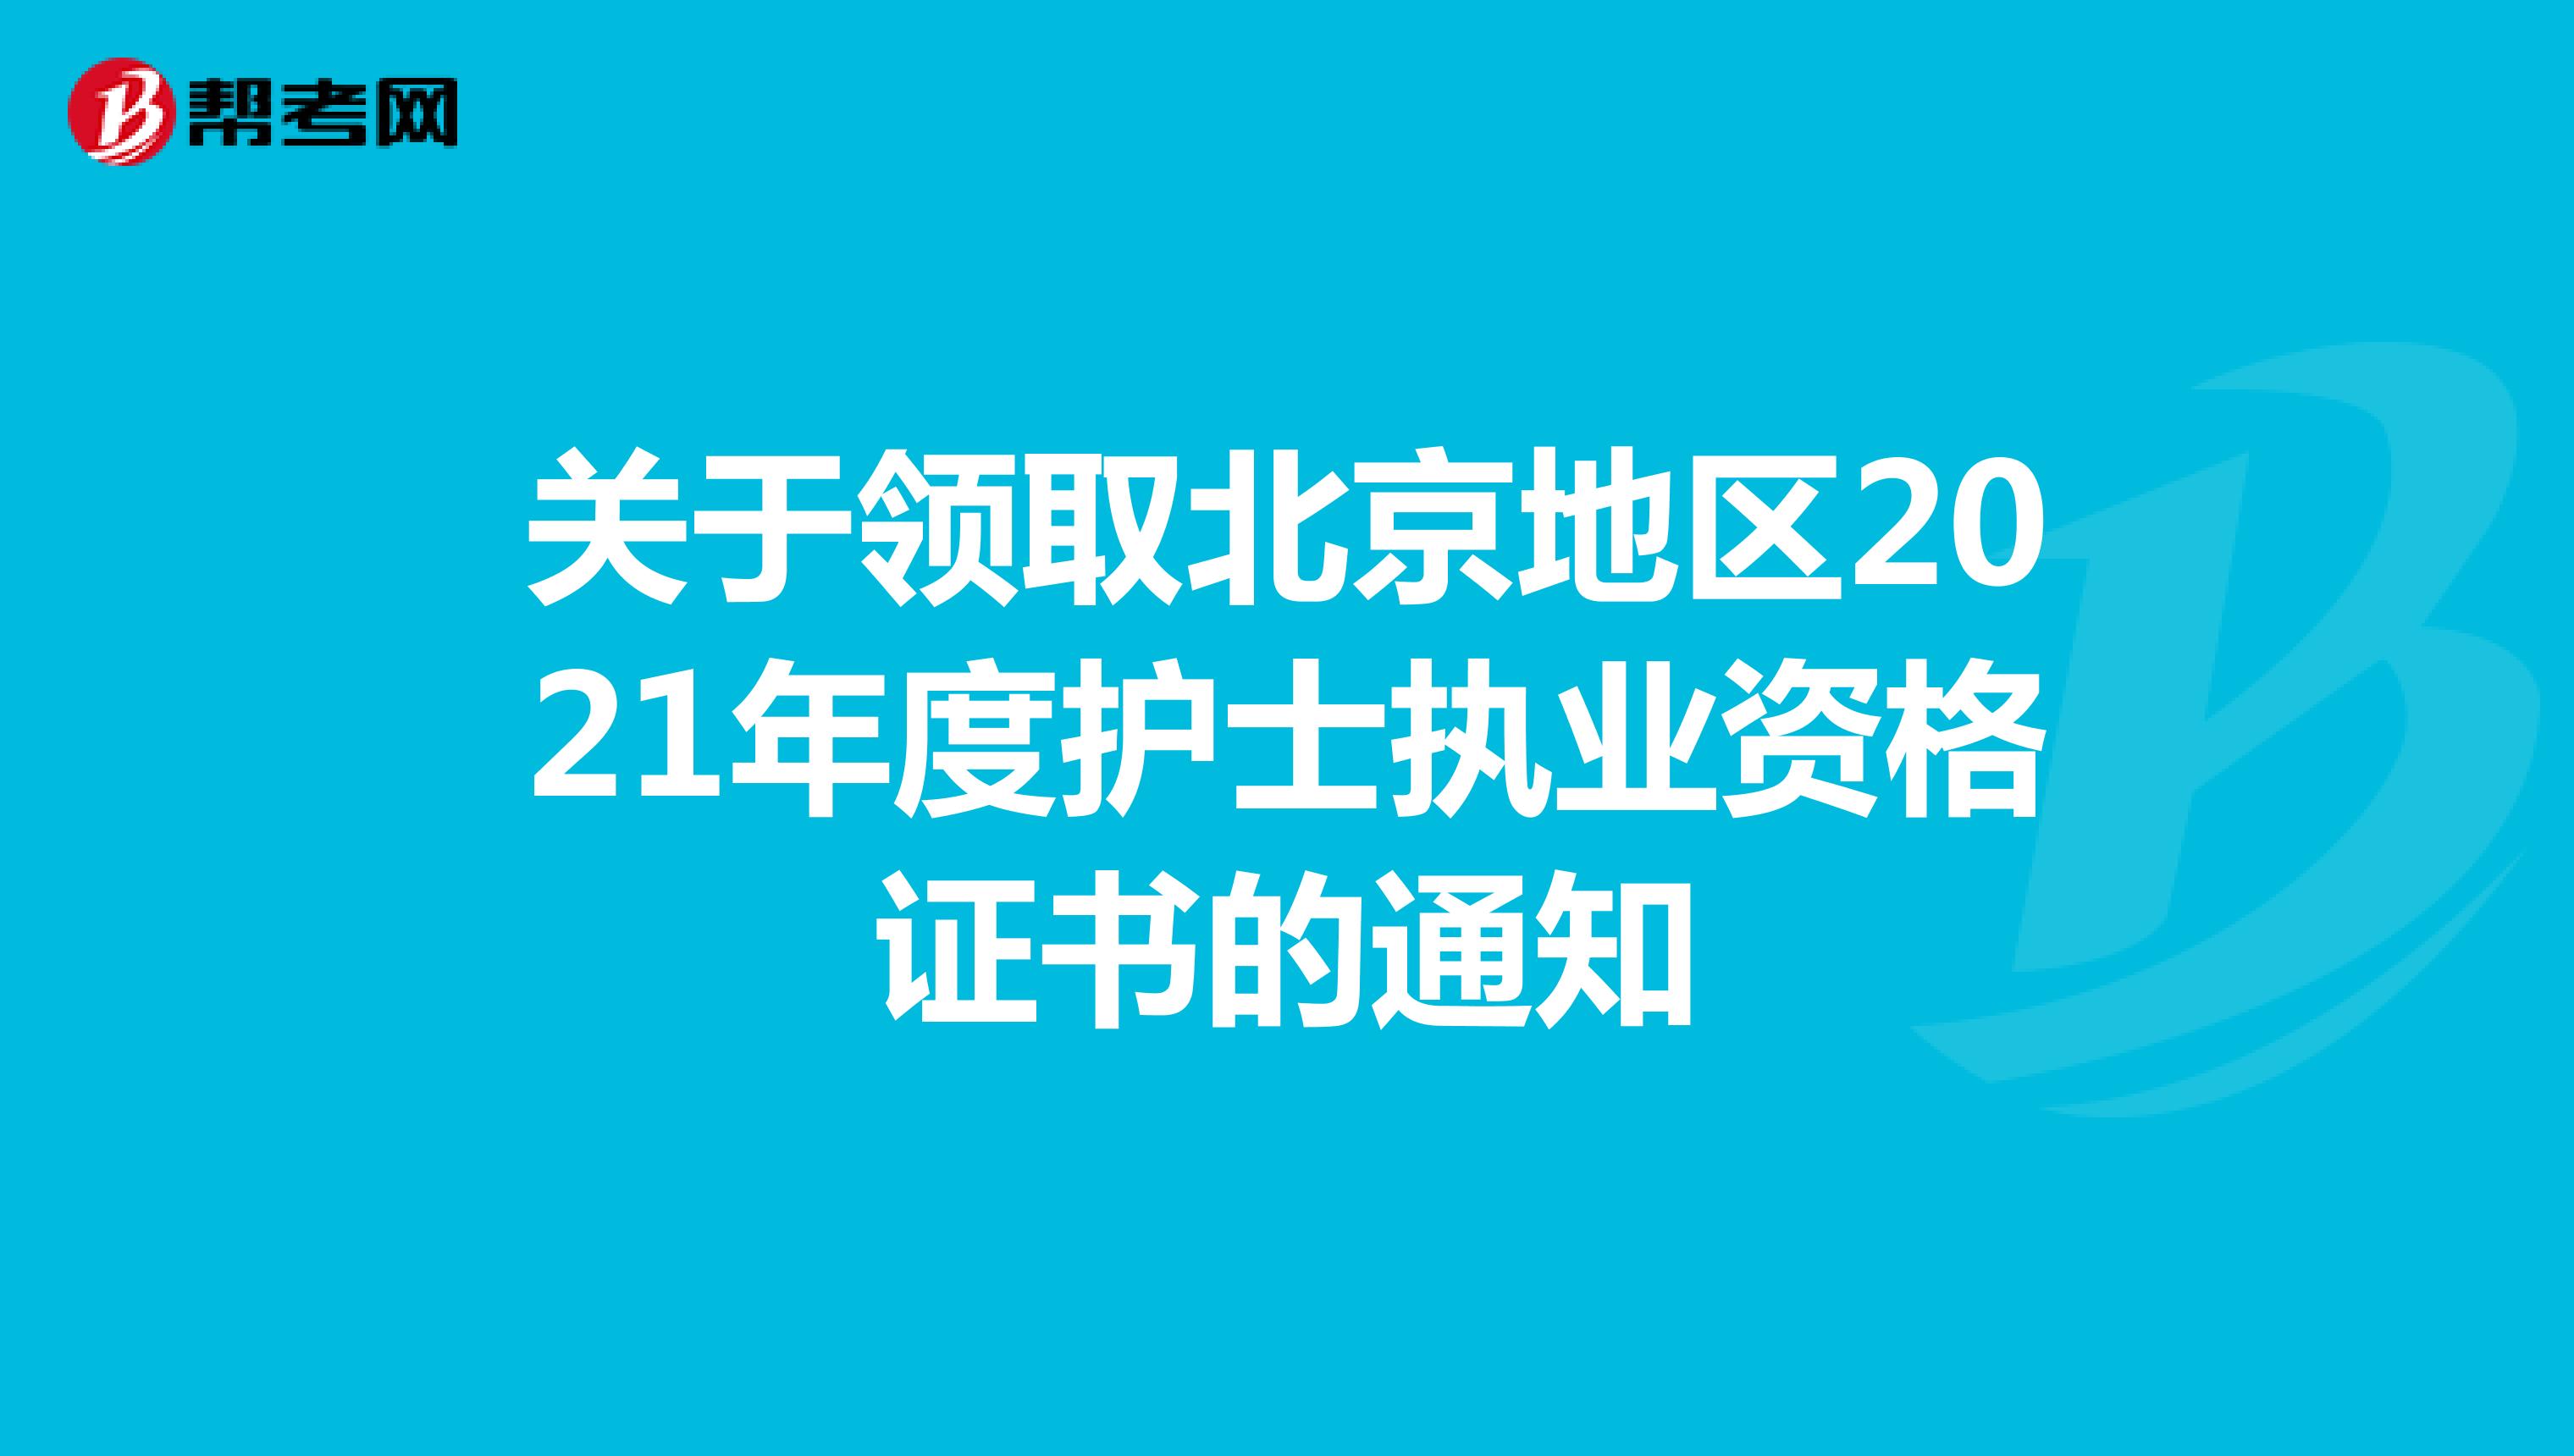 关于领取北京地区2021年度护士执业资格证书的通知